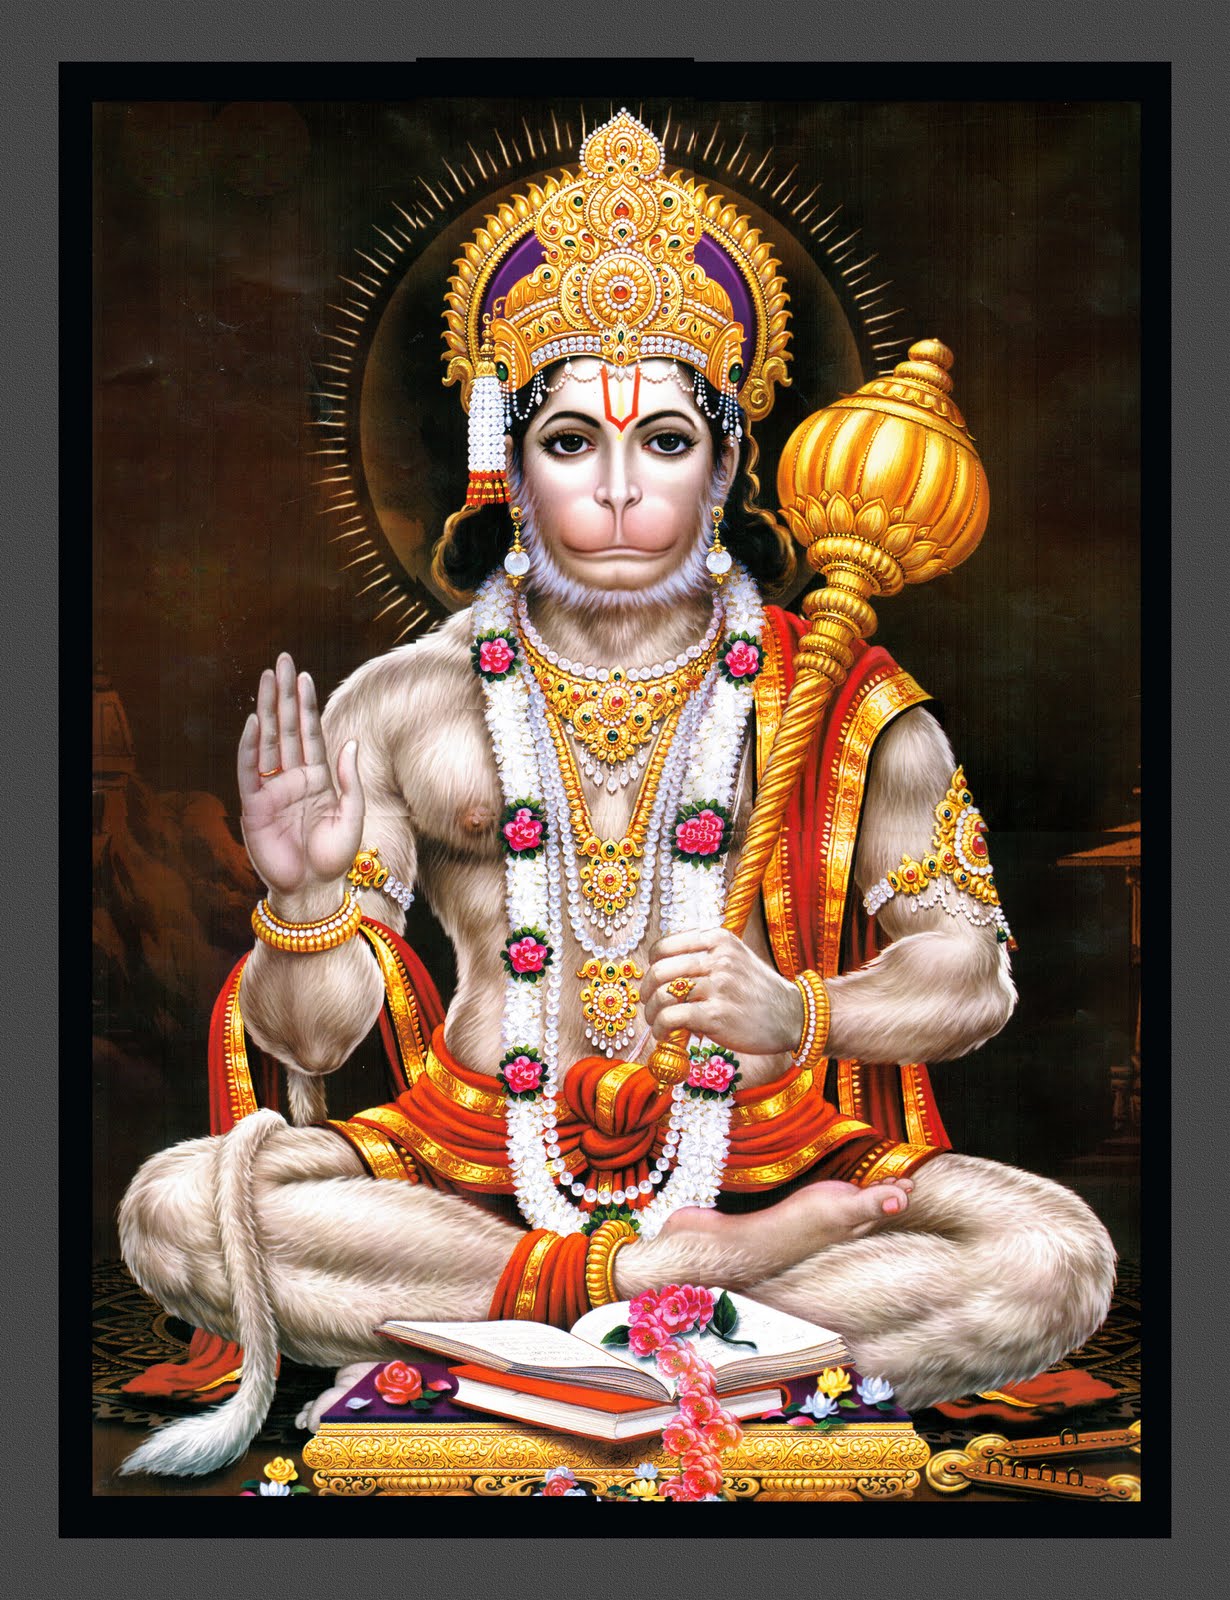 Archives De Shiva Page Sur Faq Hindou Obtenez Des R Ponses